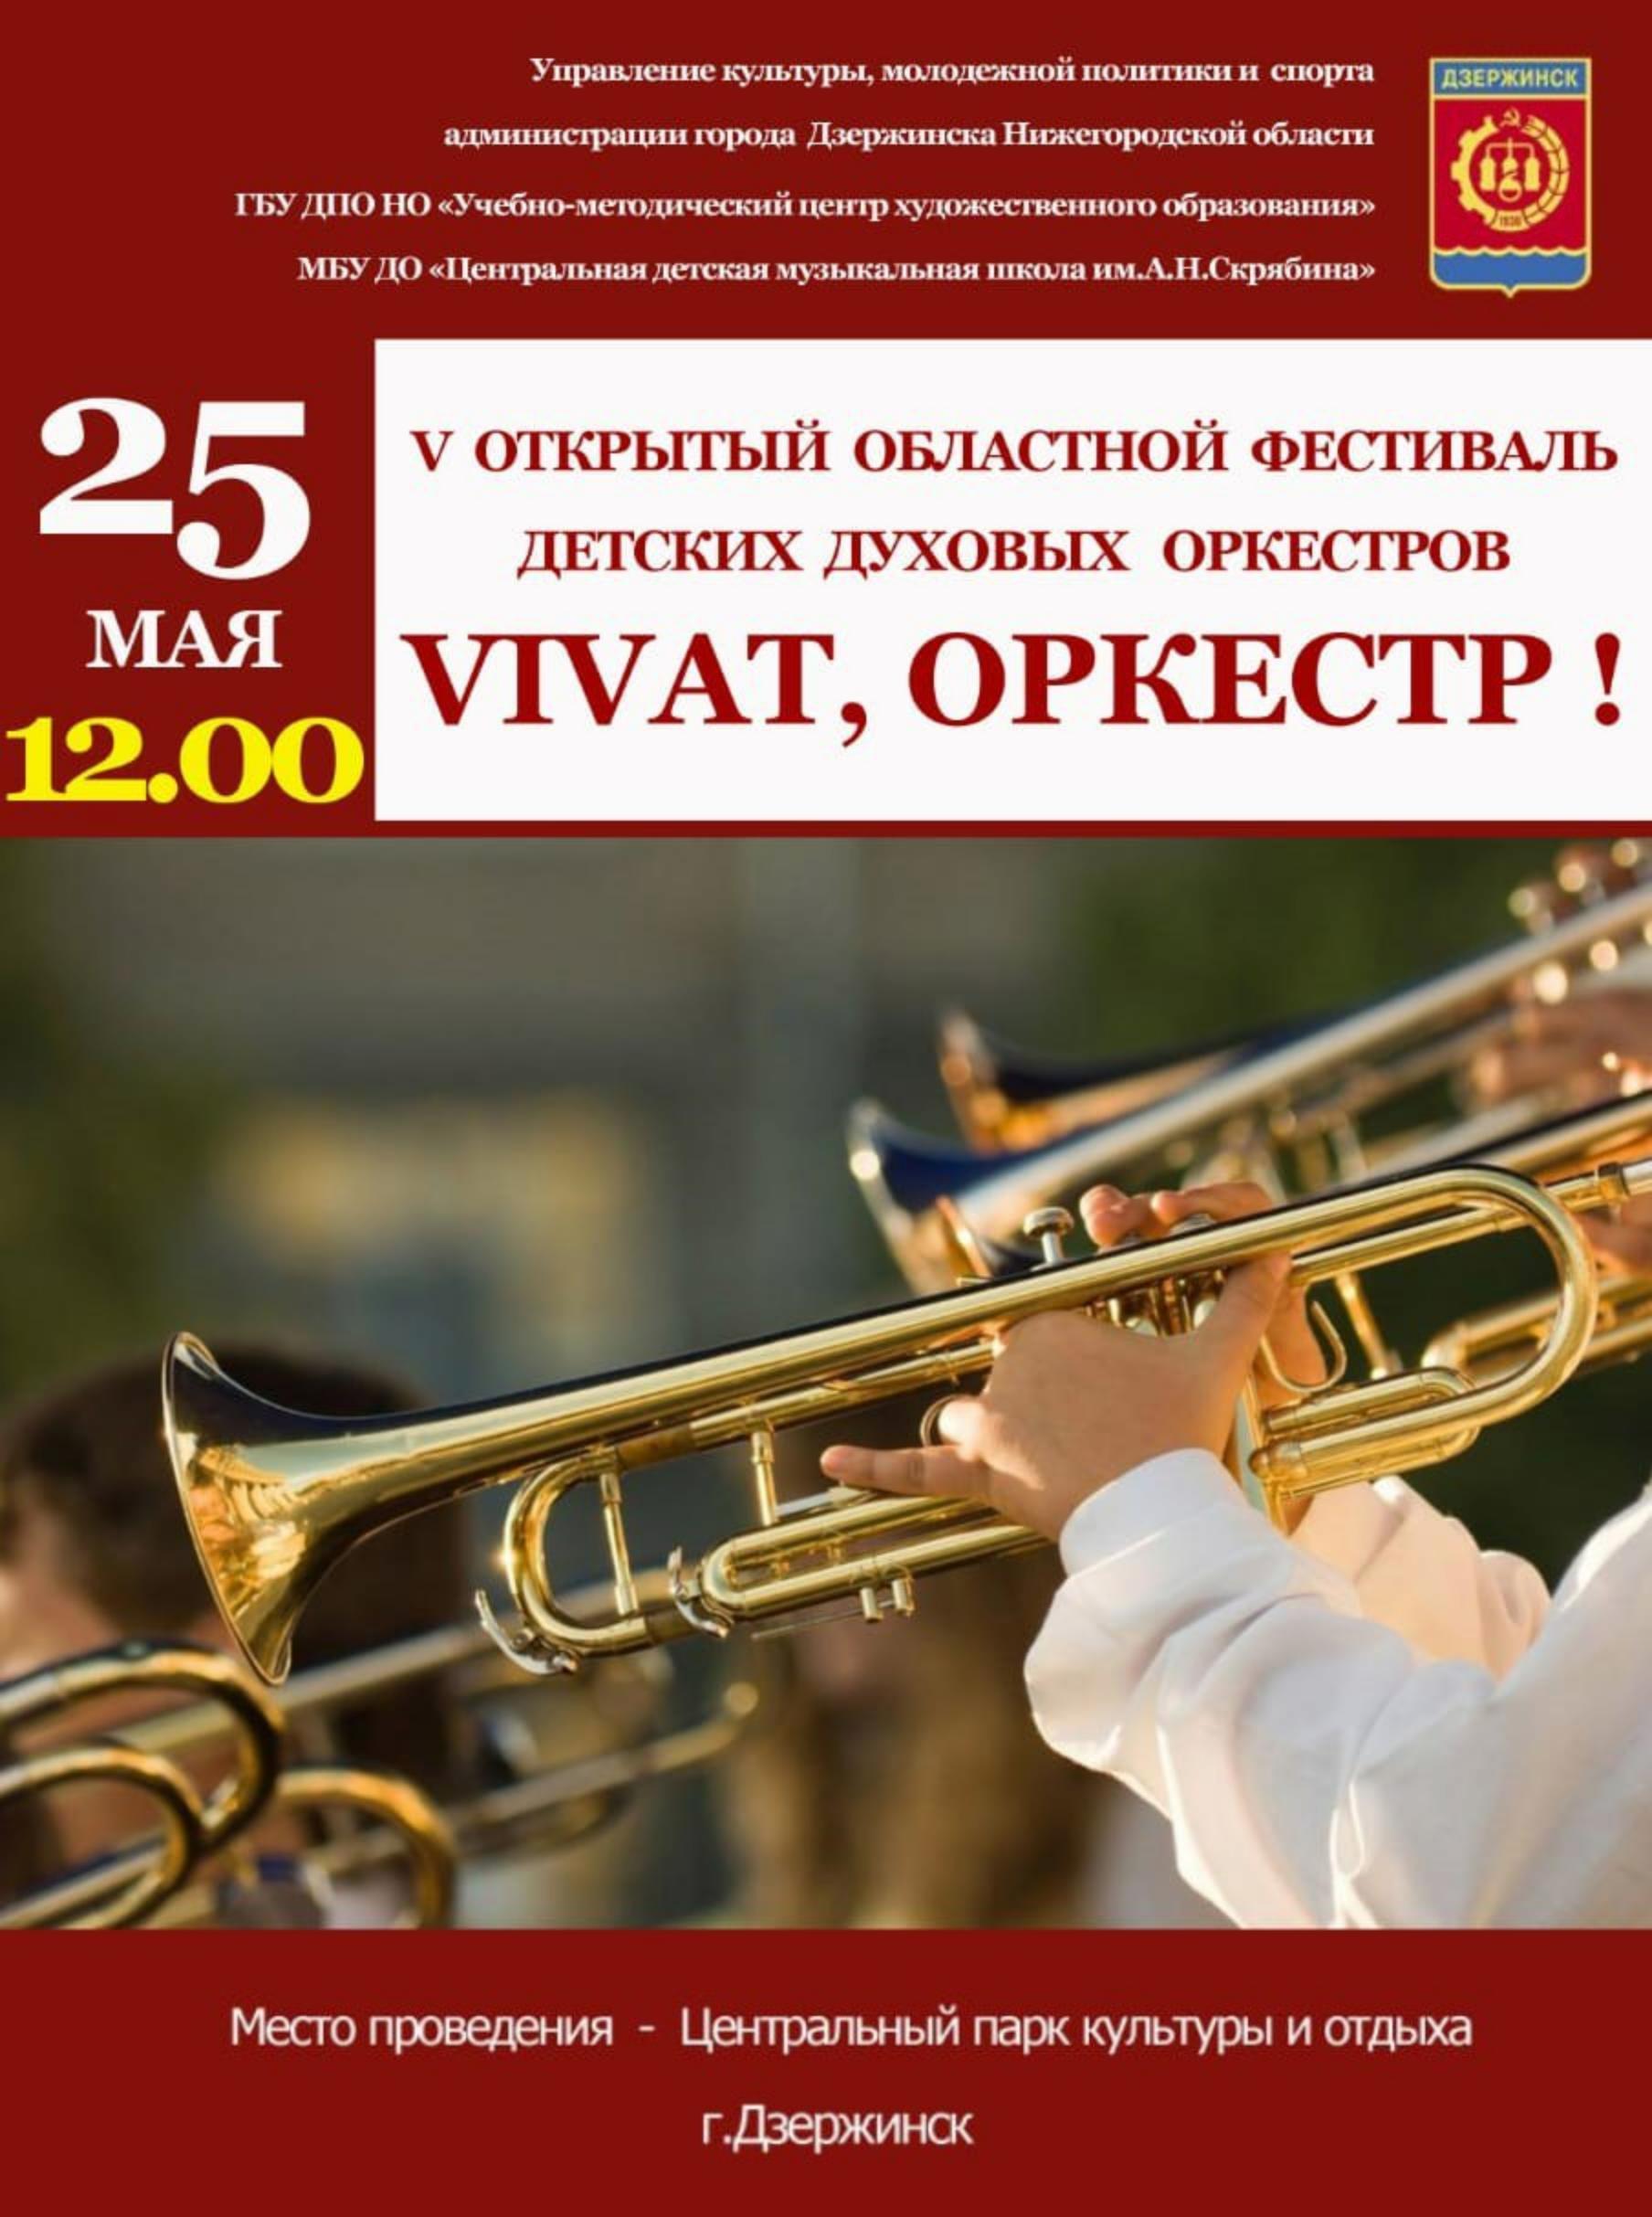 V Открытый областной фестиваль духовых оркестров пройдет в Дзержинске в День города